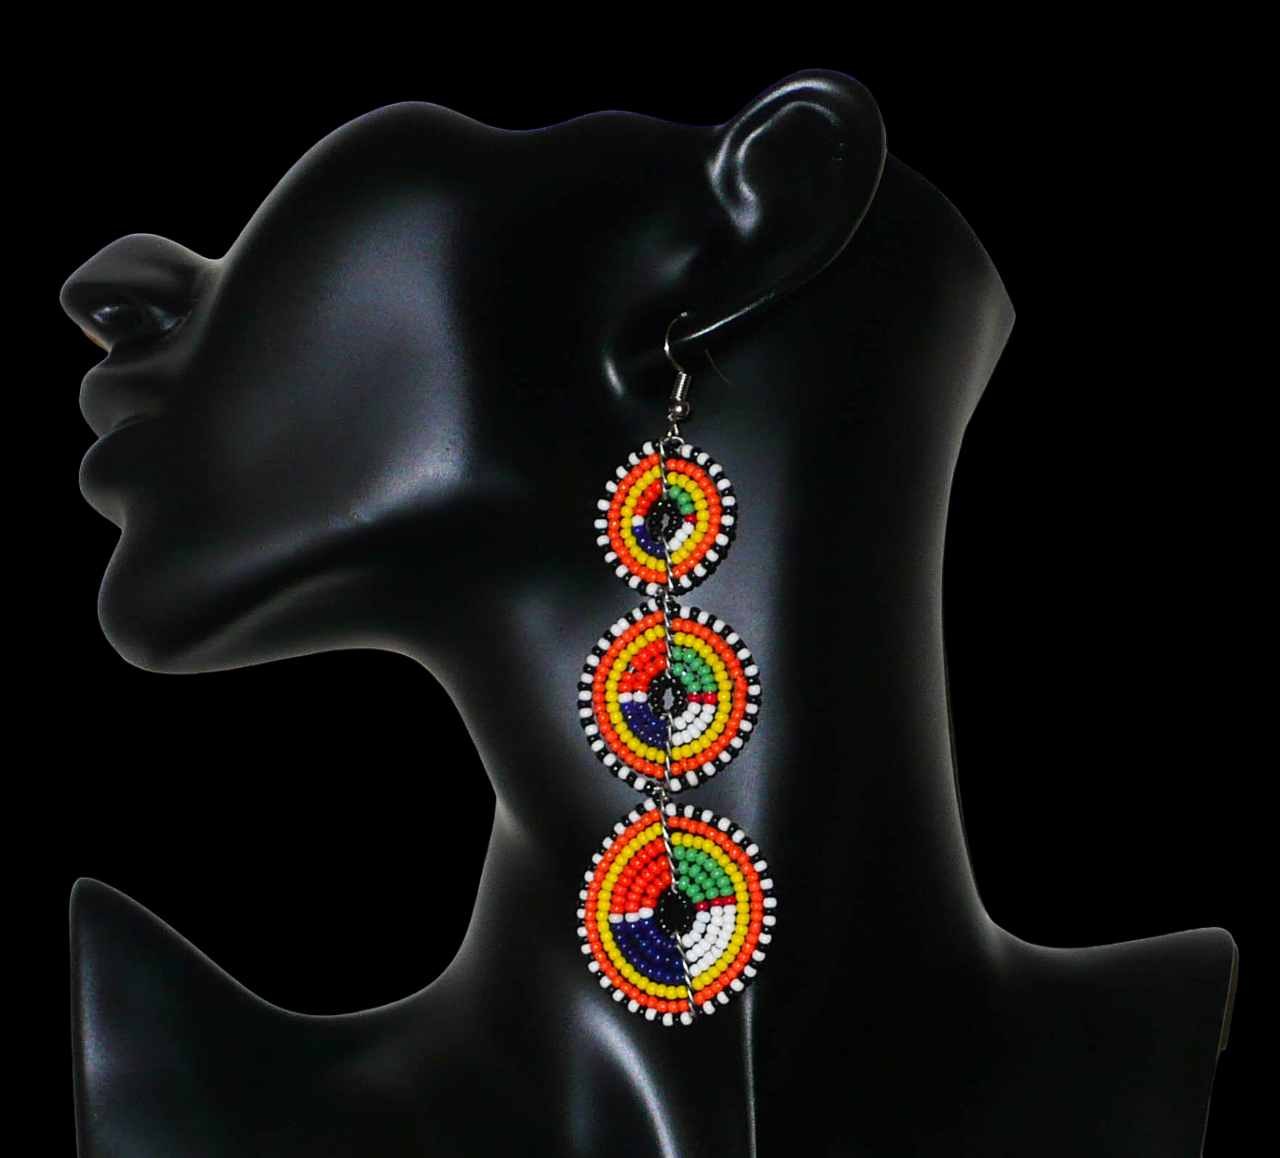 Boucles d'oreilles africaines ethniques chic composées de perles de rocaille multicolores montées en forme de cercles superposés. Elles mesurent 10,5 cm et 3 cm de large et se portent avec des crochets en acier inoxydable sur des oreilles percées. Timeless Fineries